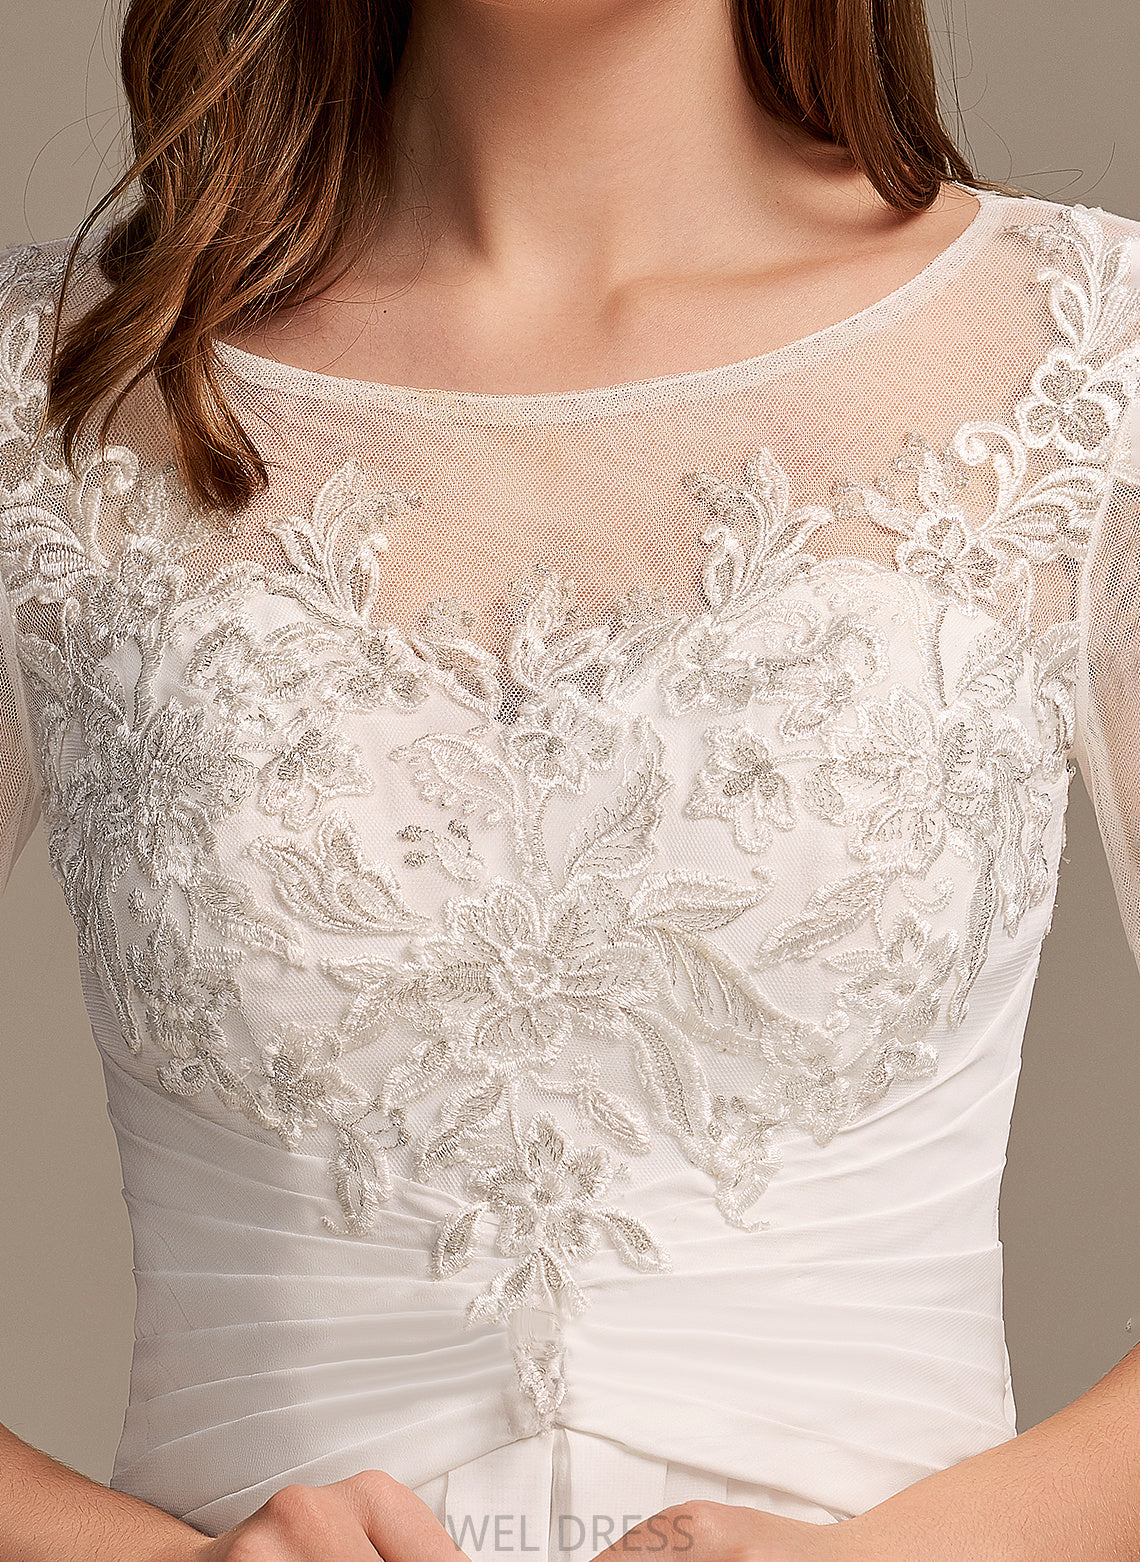 Lace Wedding Asymmetrical Dress Wedding Dresses Illusion A-Line Chiffon Lilia With